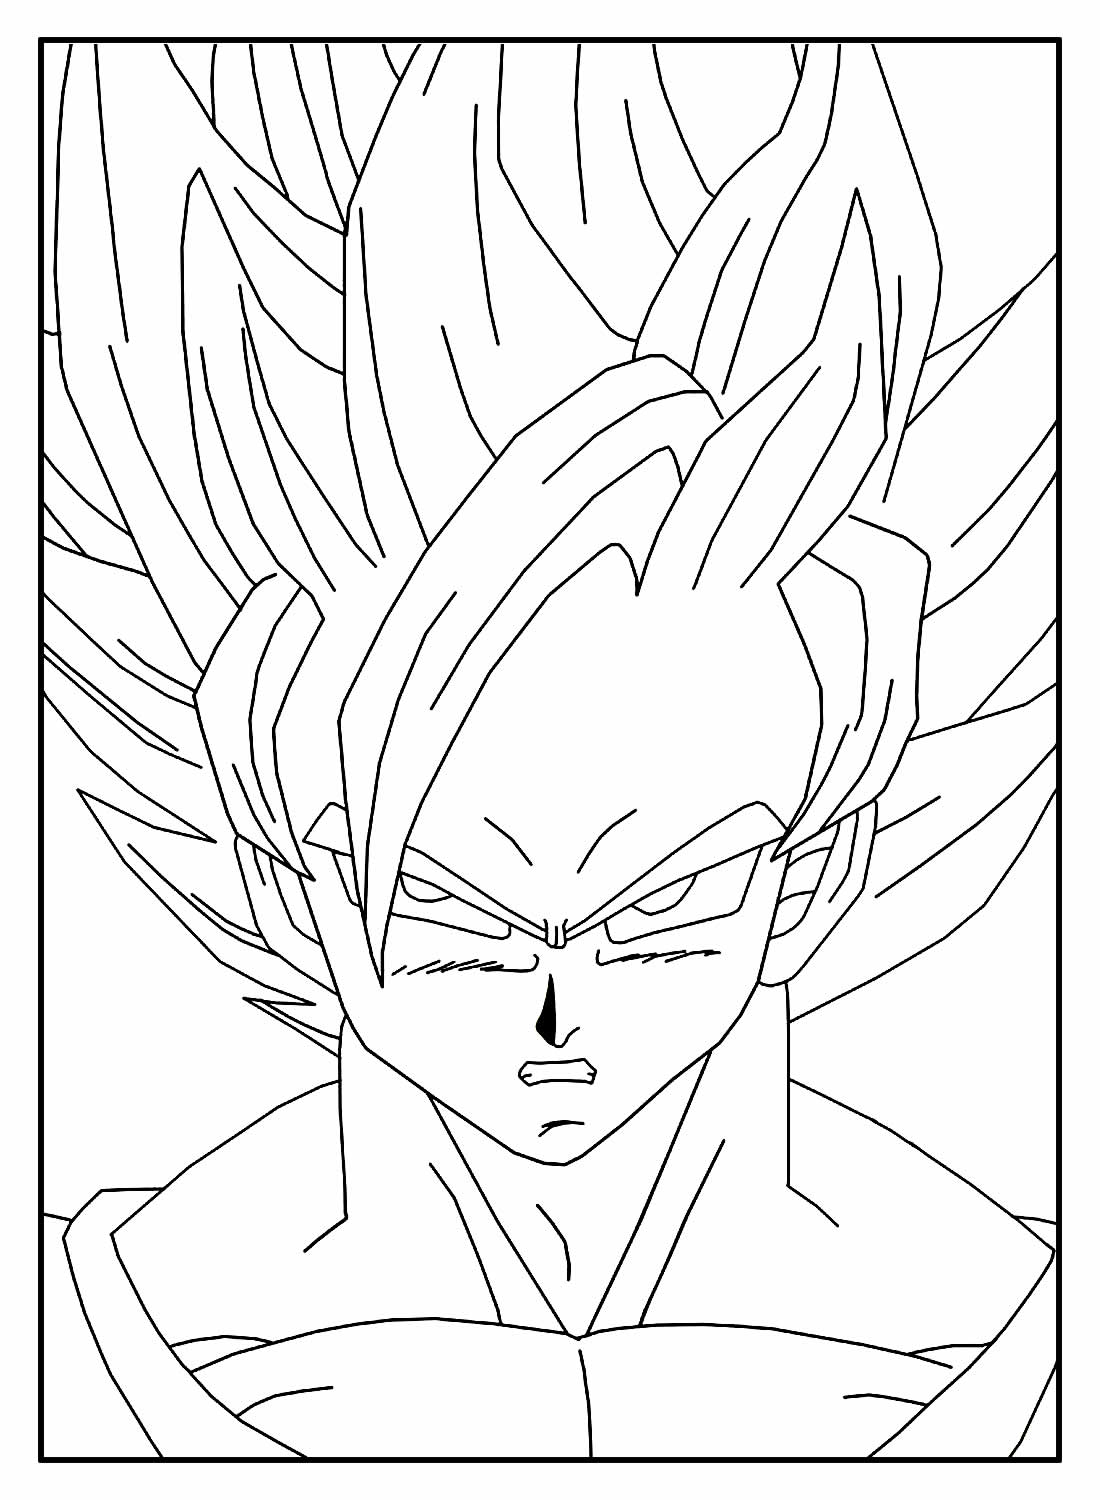 Goku desenhos para colorir, confira